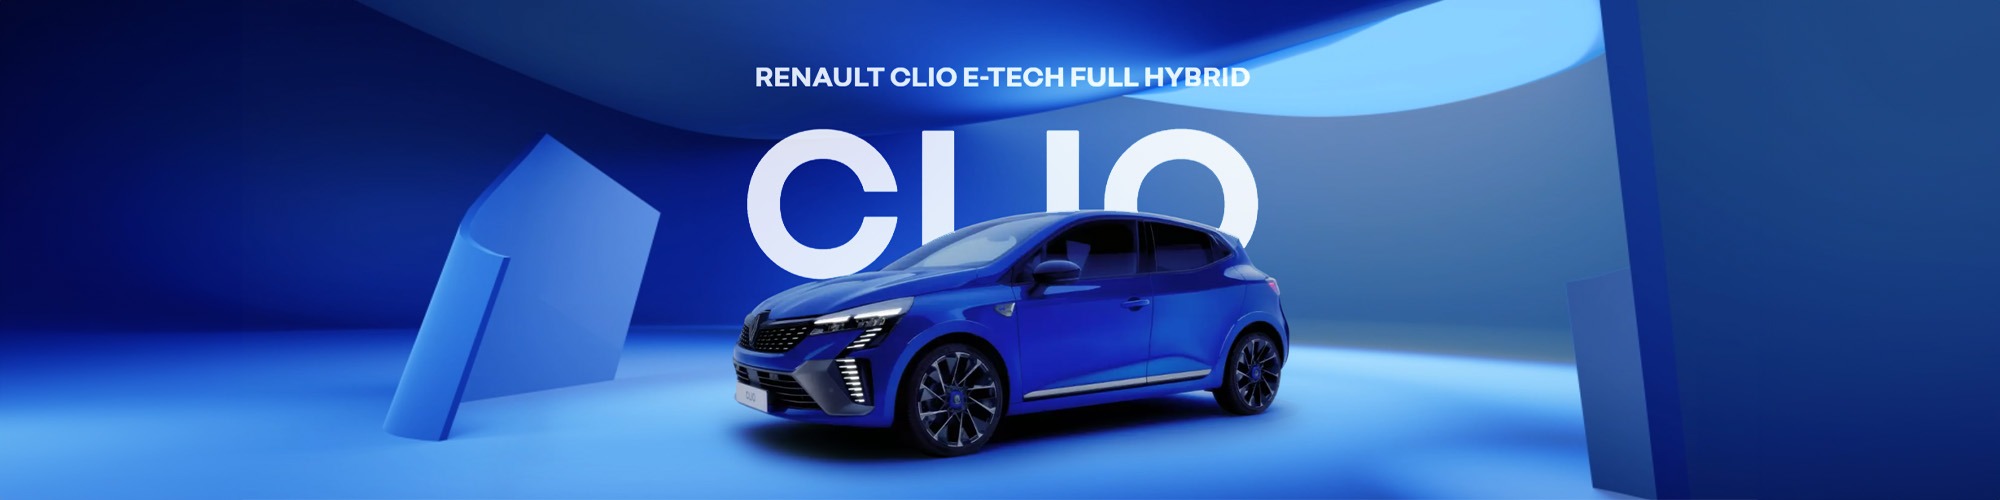 renault-vans clio-hybrid Banner